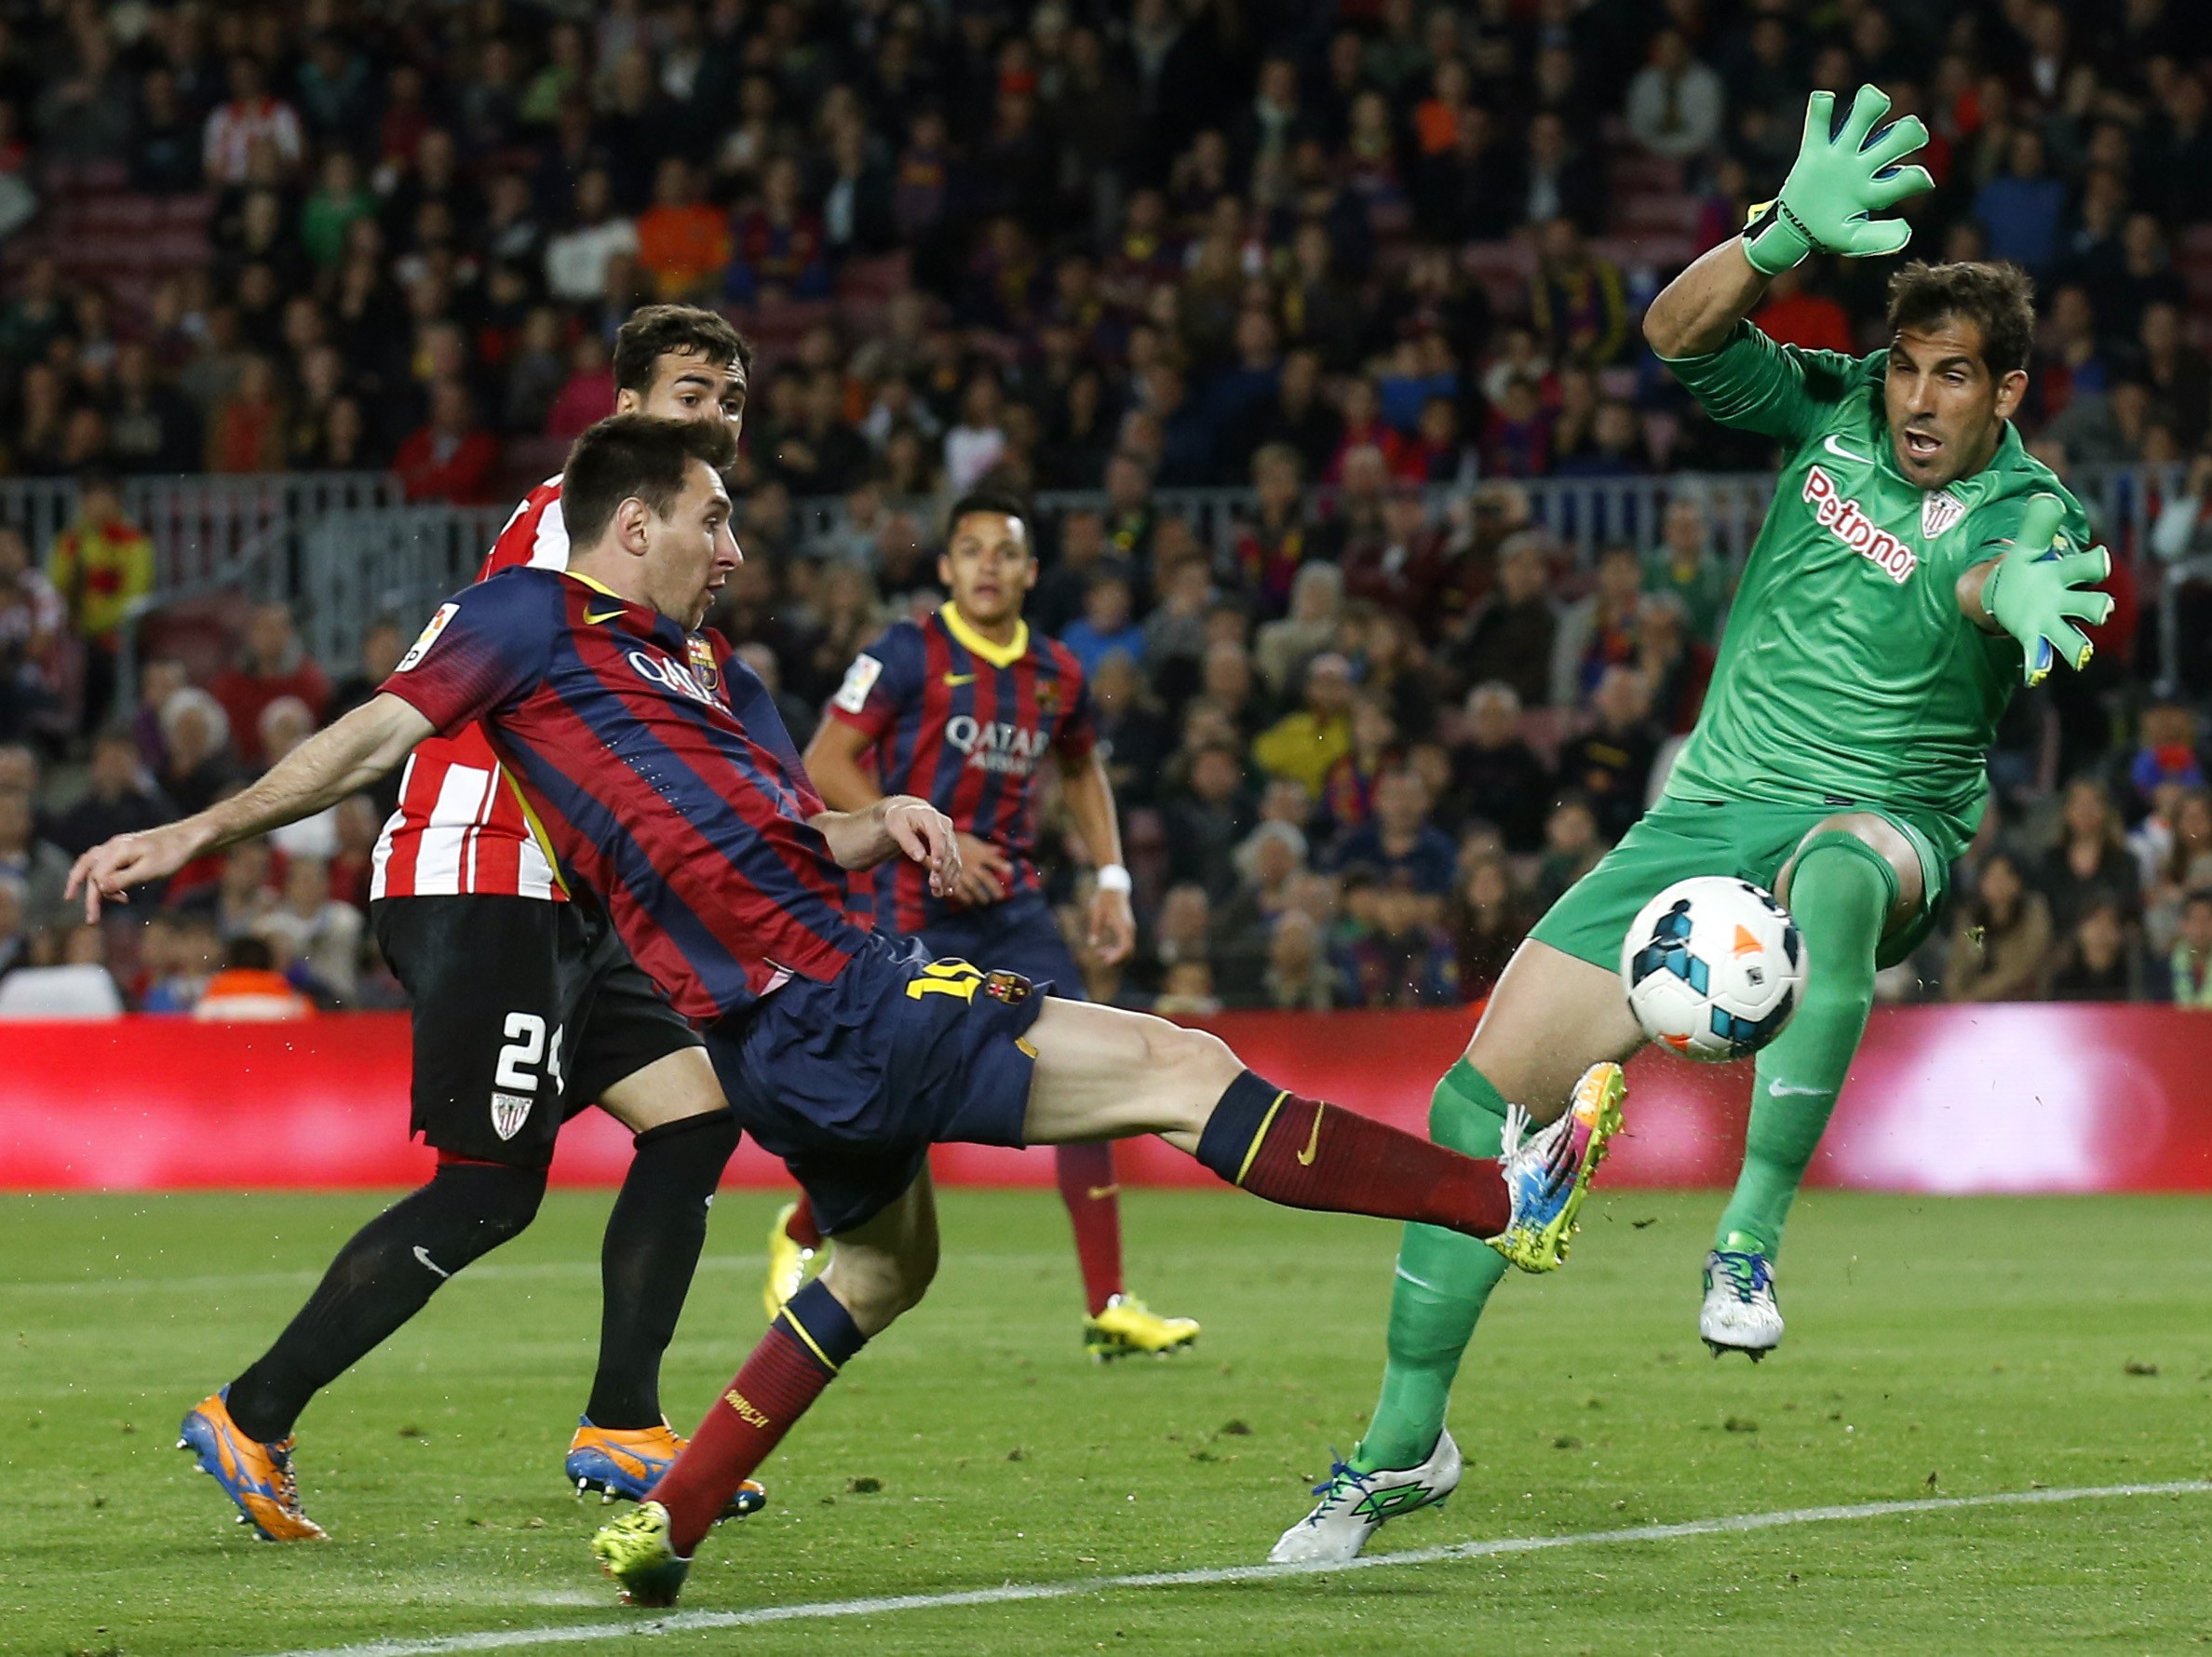 Messi free kick ends Barcelona's nightmare run | Tuoi Tre News